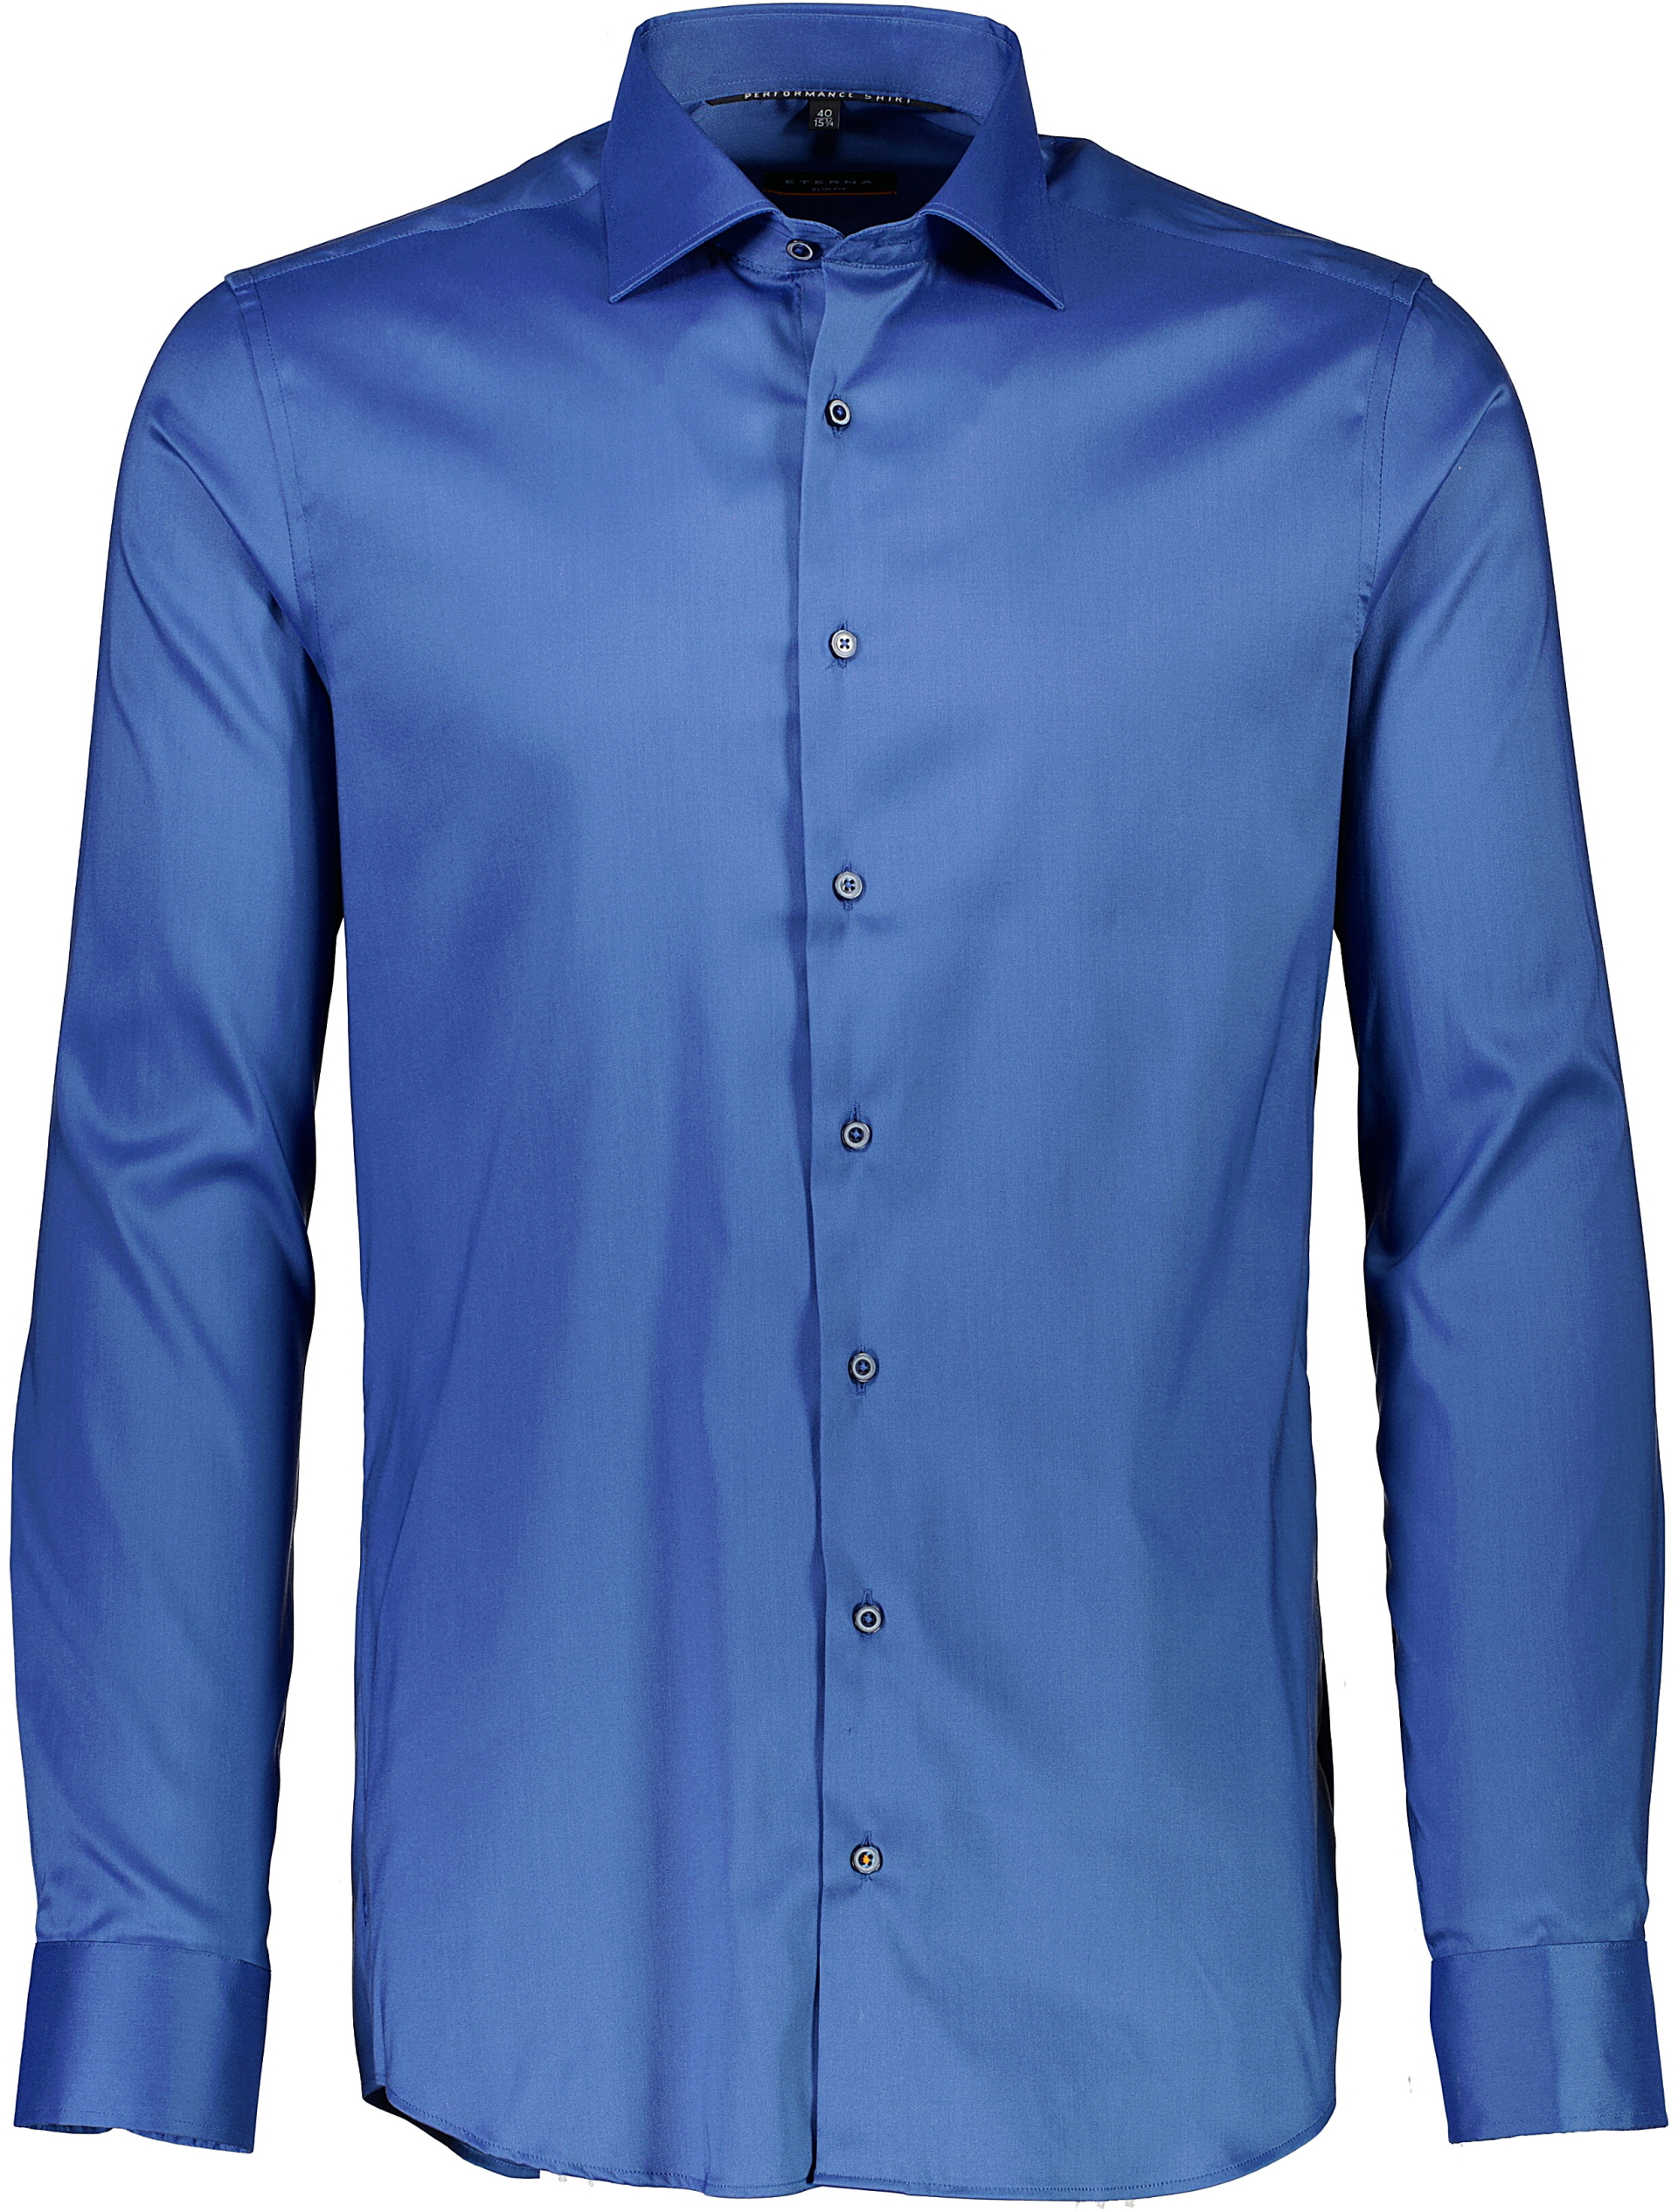 Eterna Business casual skjorte blå / 07 blue